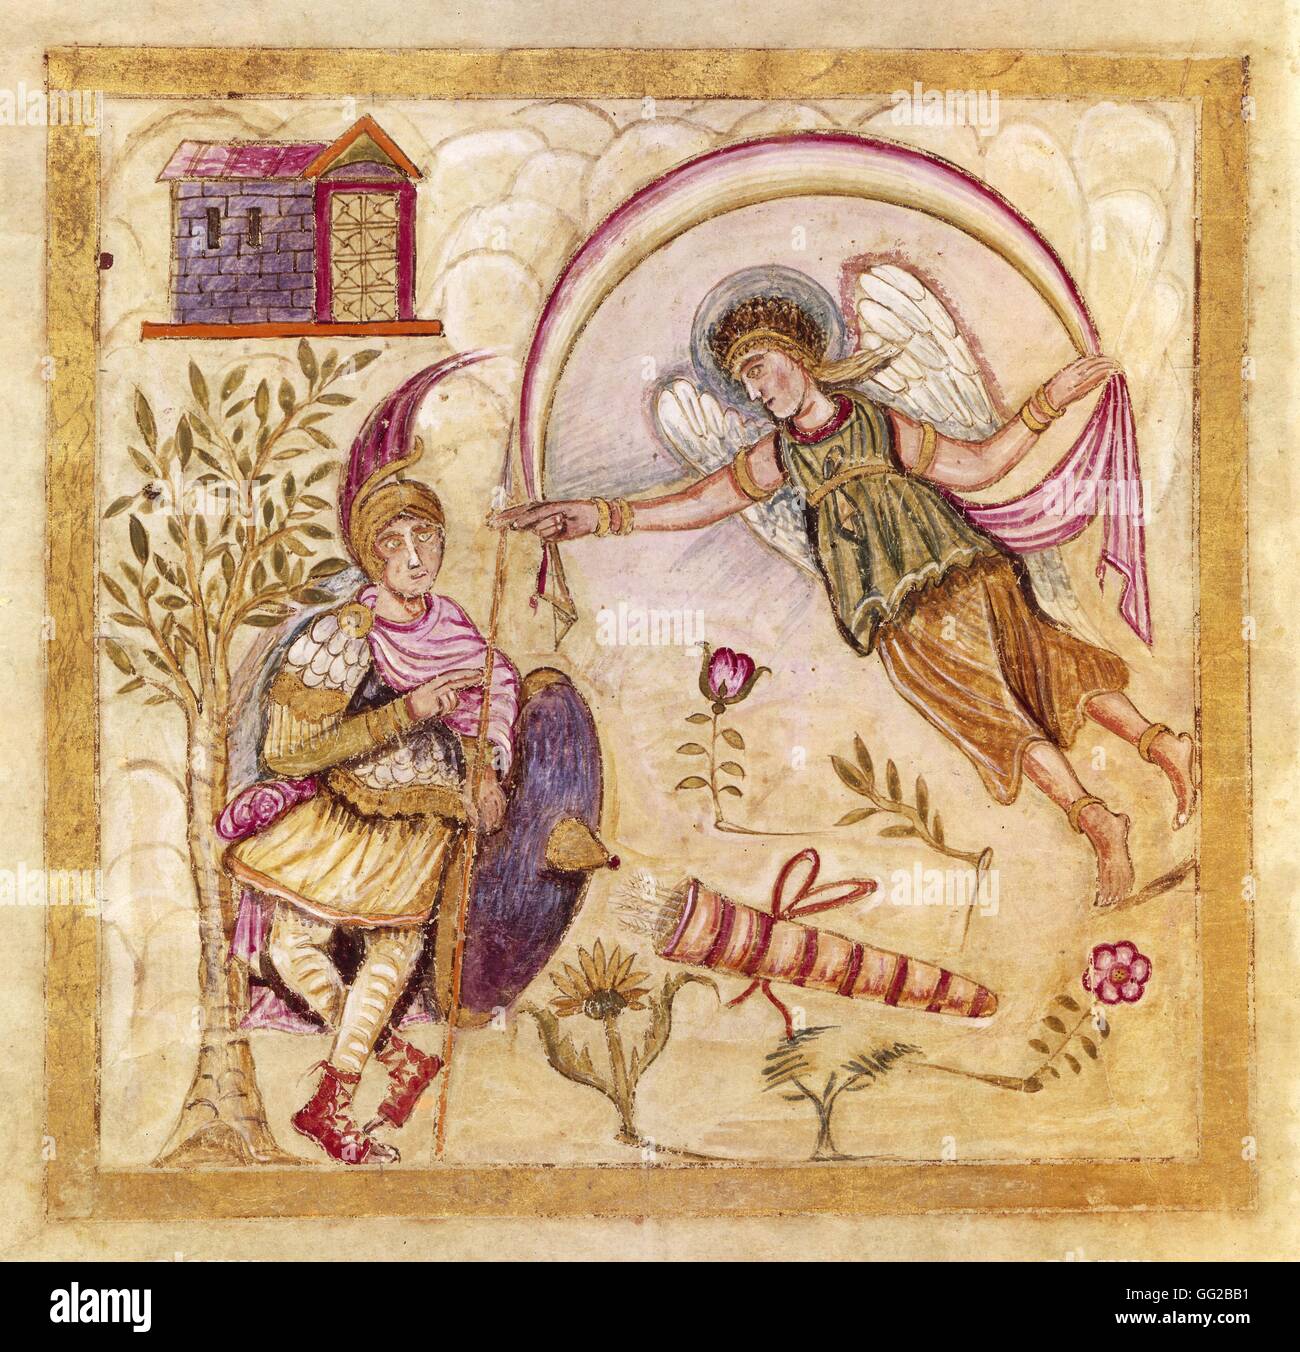 Illustrierte und beleuchtete Manuskript der "Eneide" von Virgile. Mittelalter Rom. Bibliothek des Vatikans Stockfoto